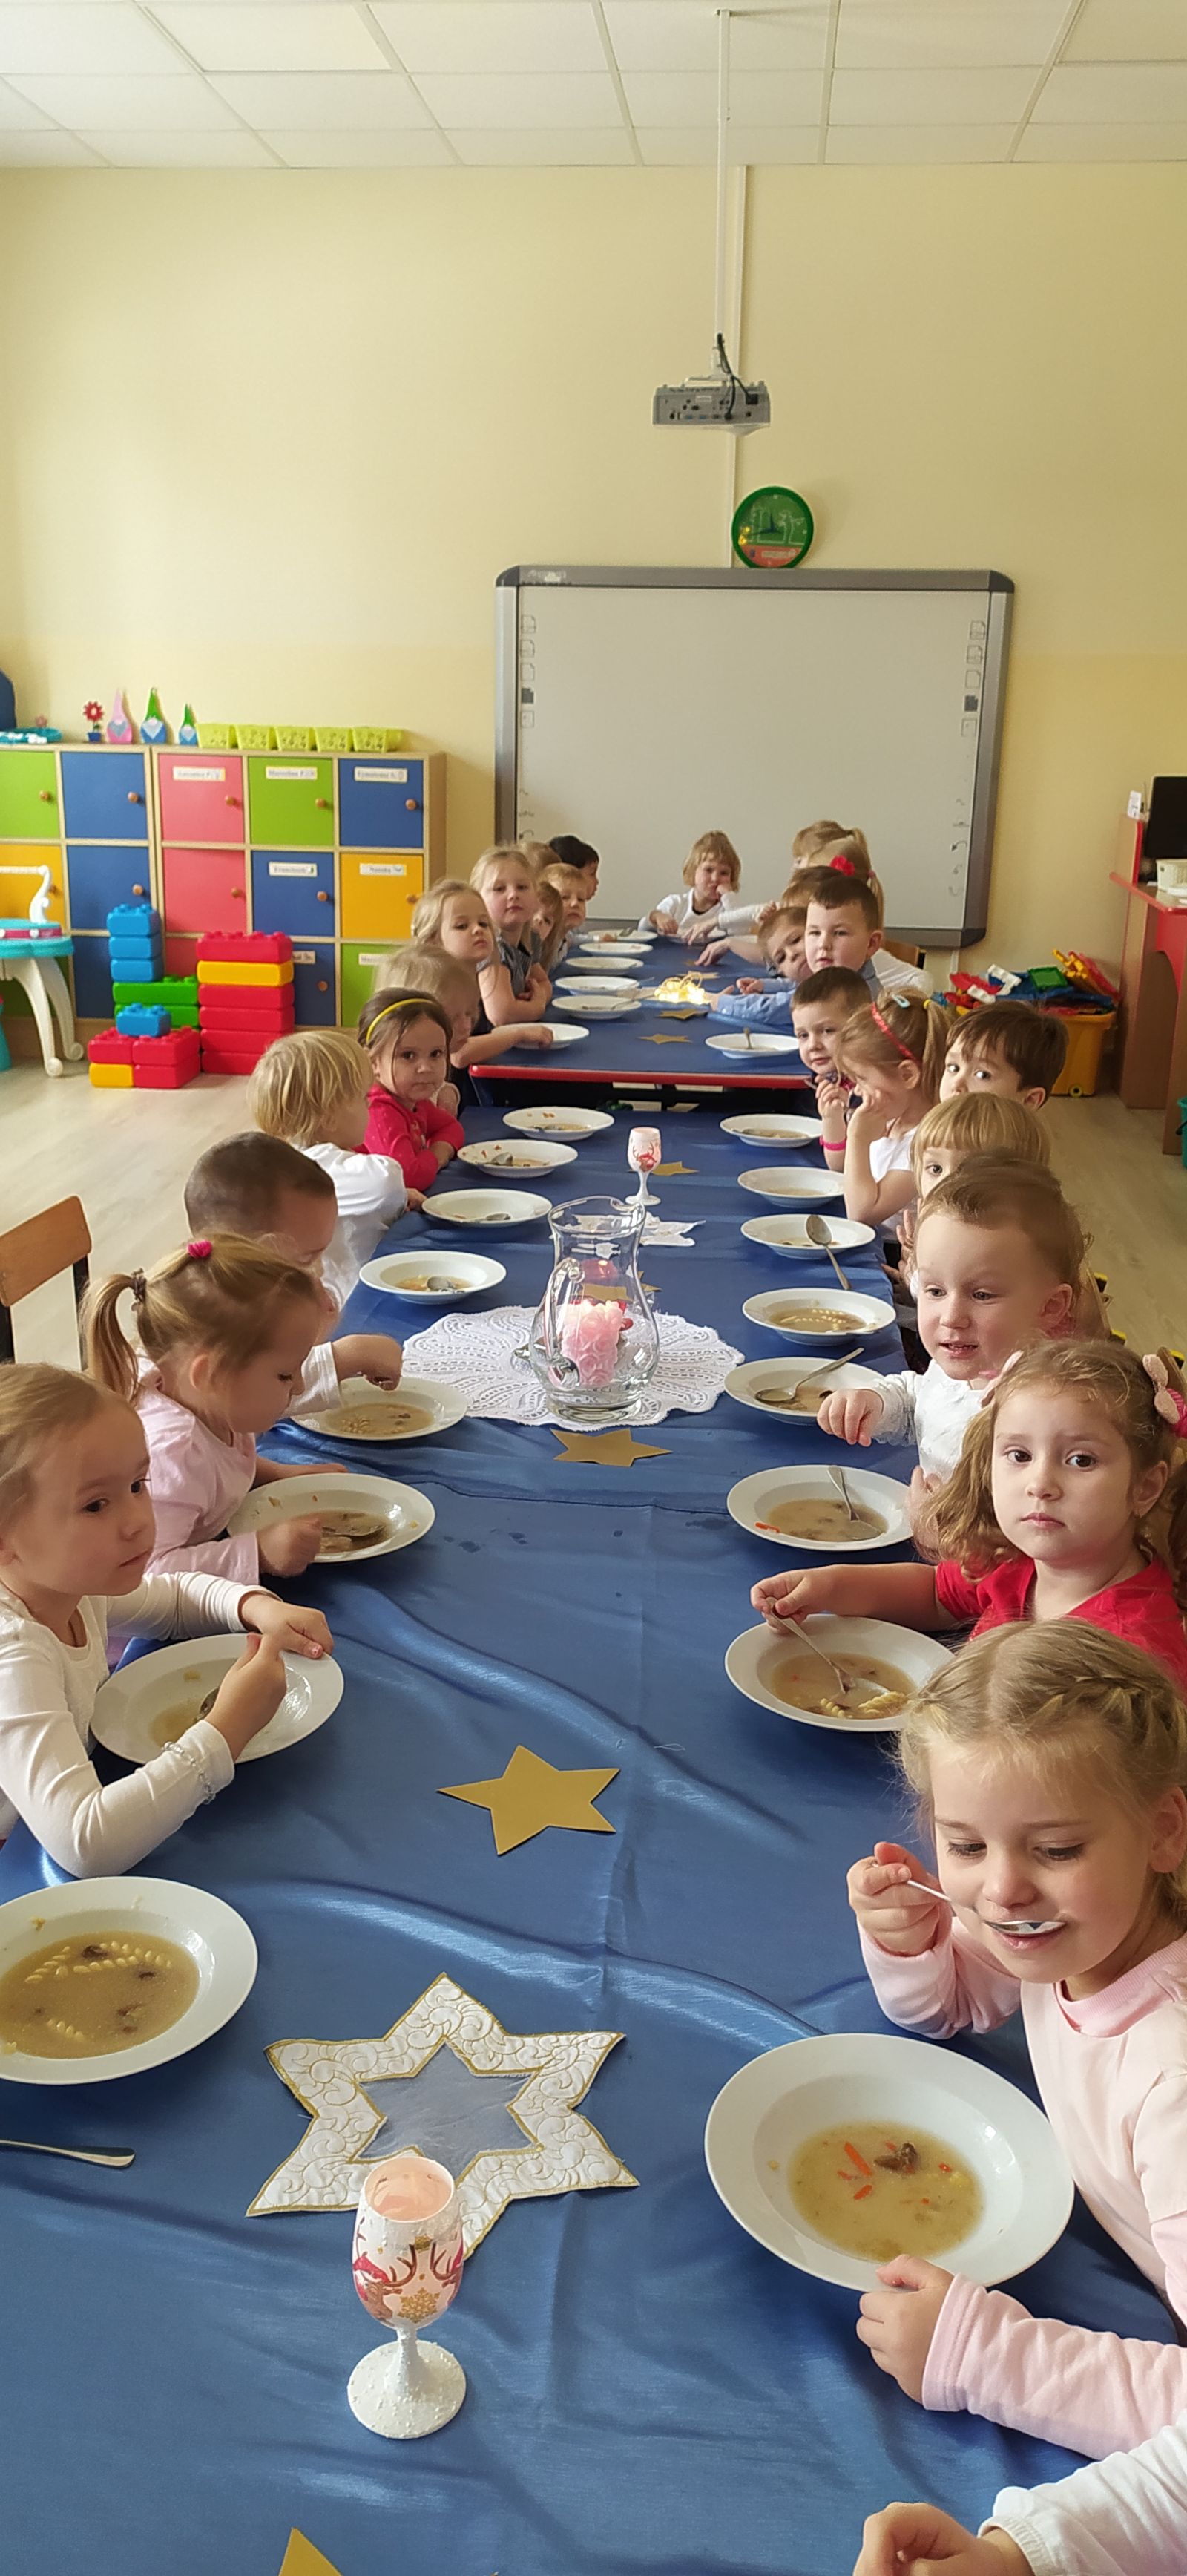 Wigilia dzieci siedzą przy stolikach spożywają posiłek